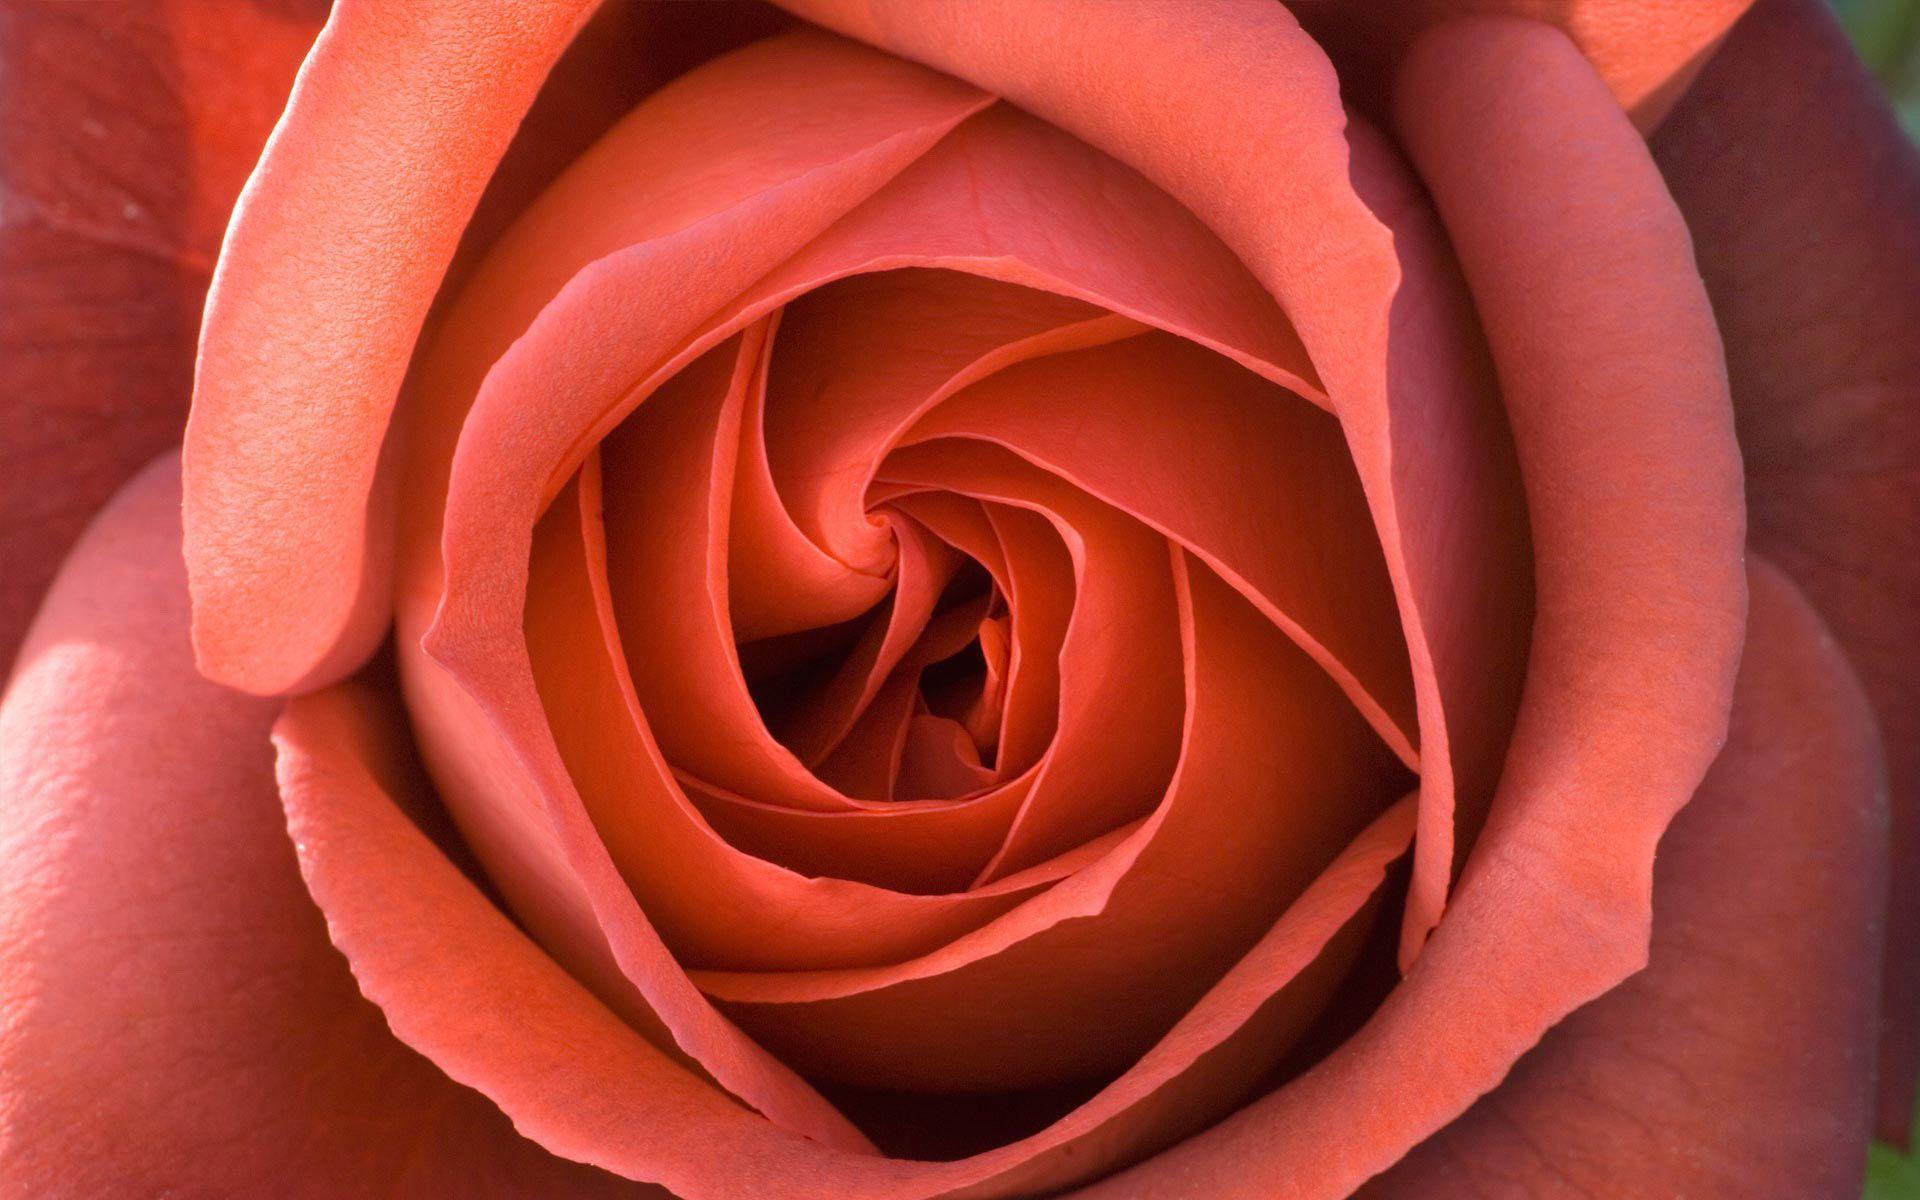 Desktop Wallpaper · Gallery · Nature · Perfect Rose. Free